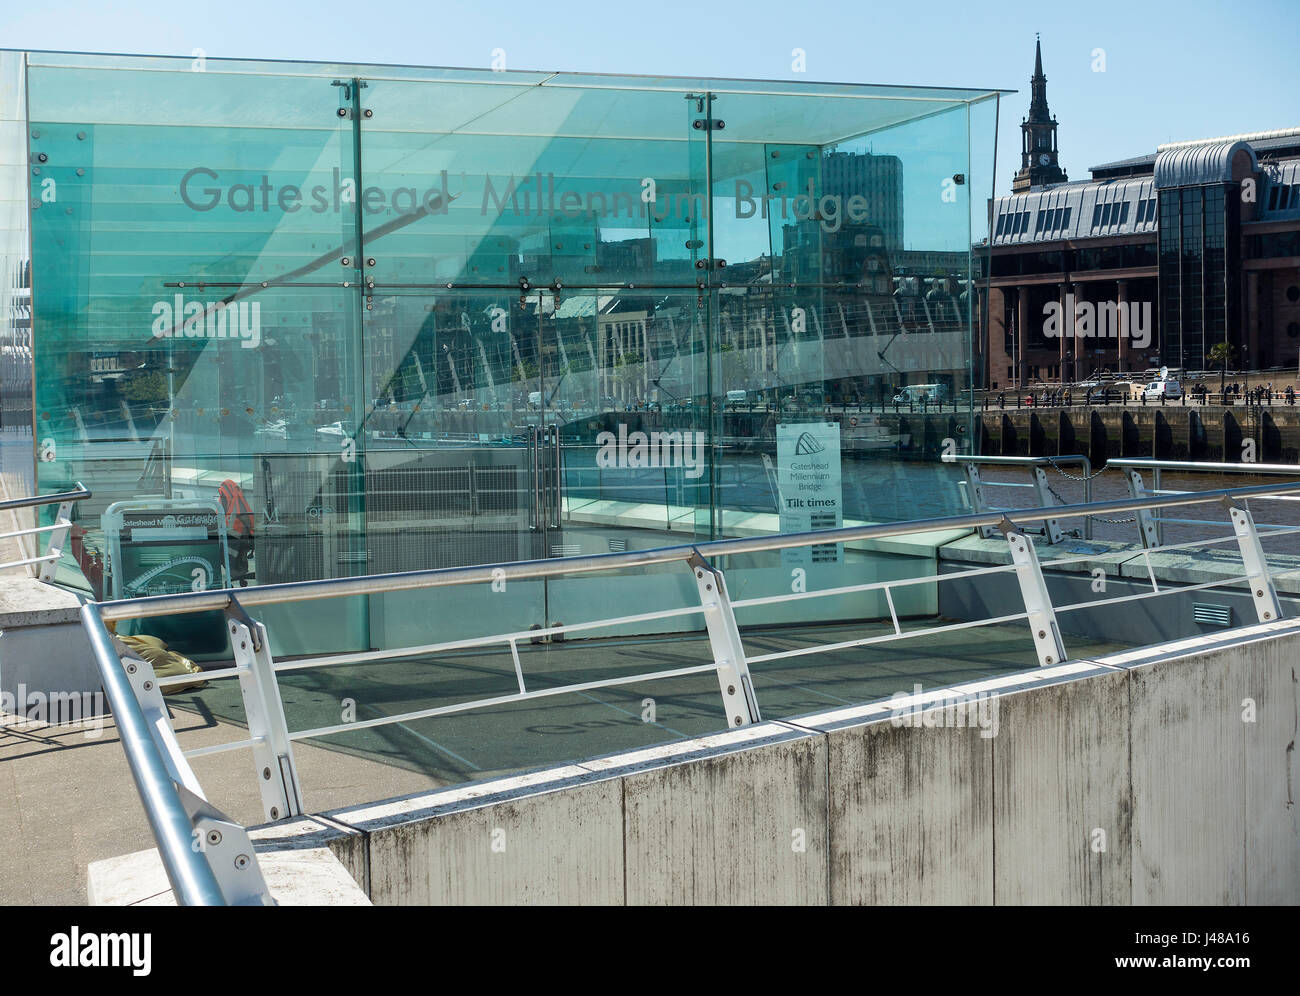 Die Glasversidtung auf dem Zuflug zur Gateshead Millennium Bridge mit Blick auf die Newcastle upon Tyne Law Courts Tyne und Wear England UK Stockfoto